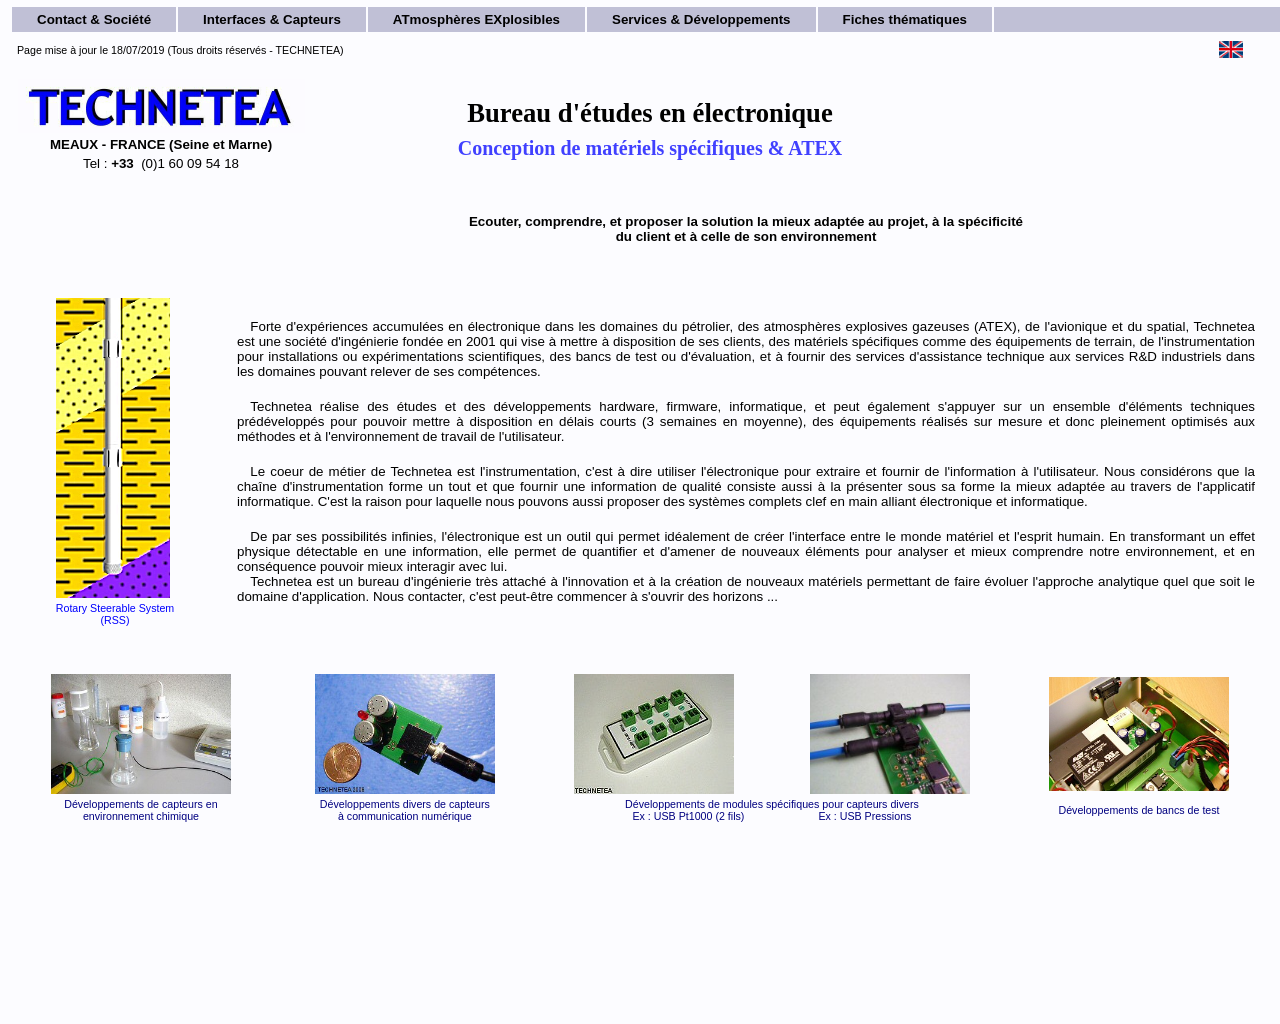 www.technetea.com